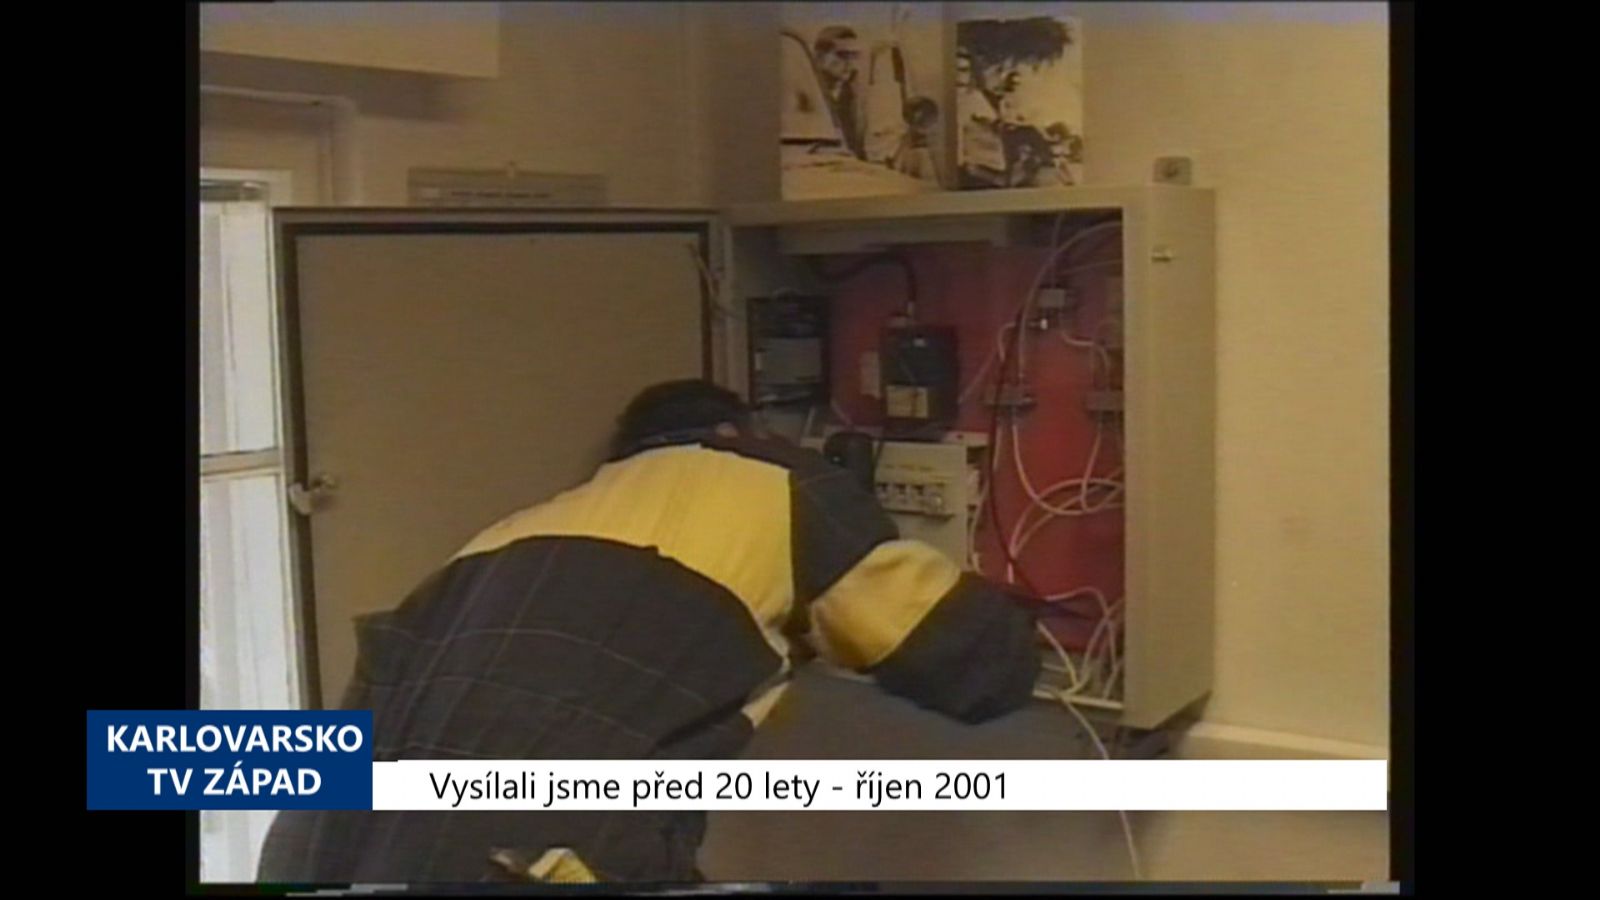 2001 – Cheb: Modernizuje se kamerový systém (TV Západ)